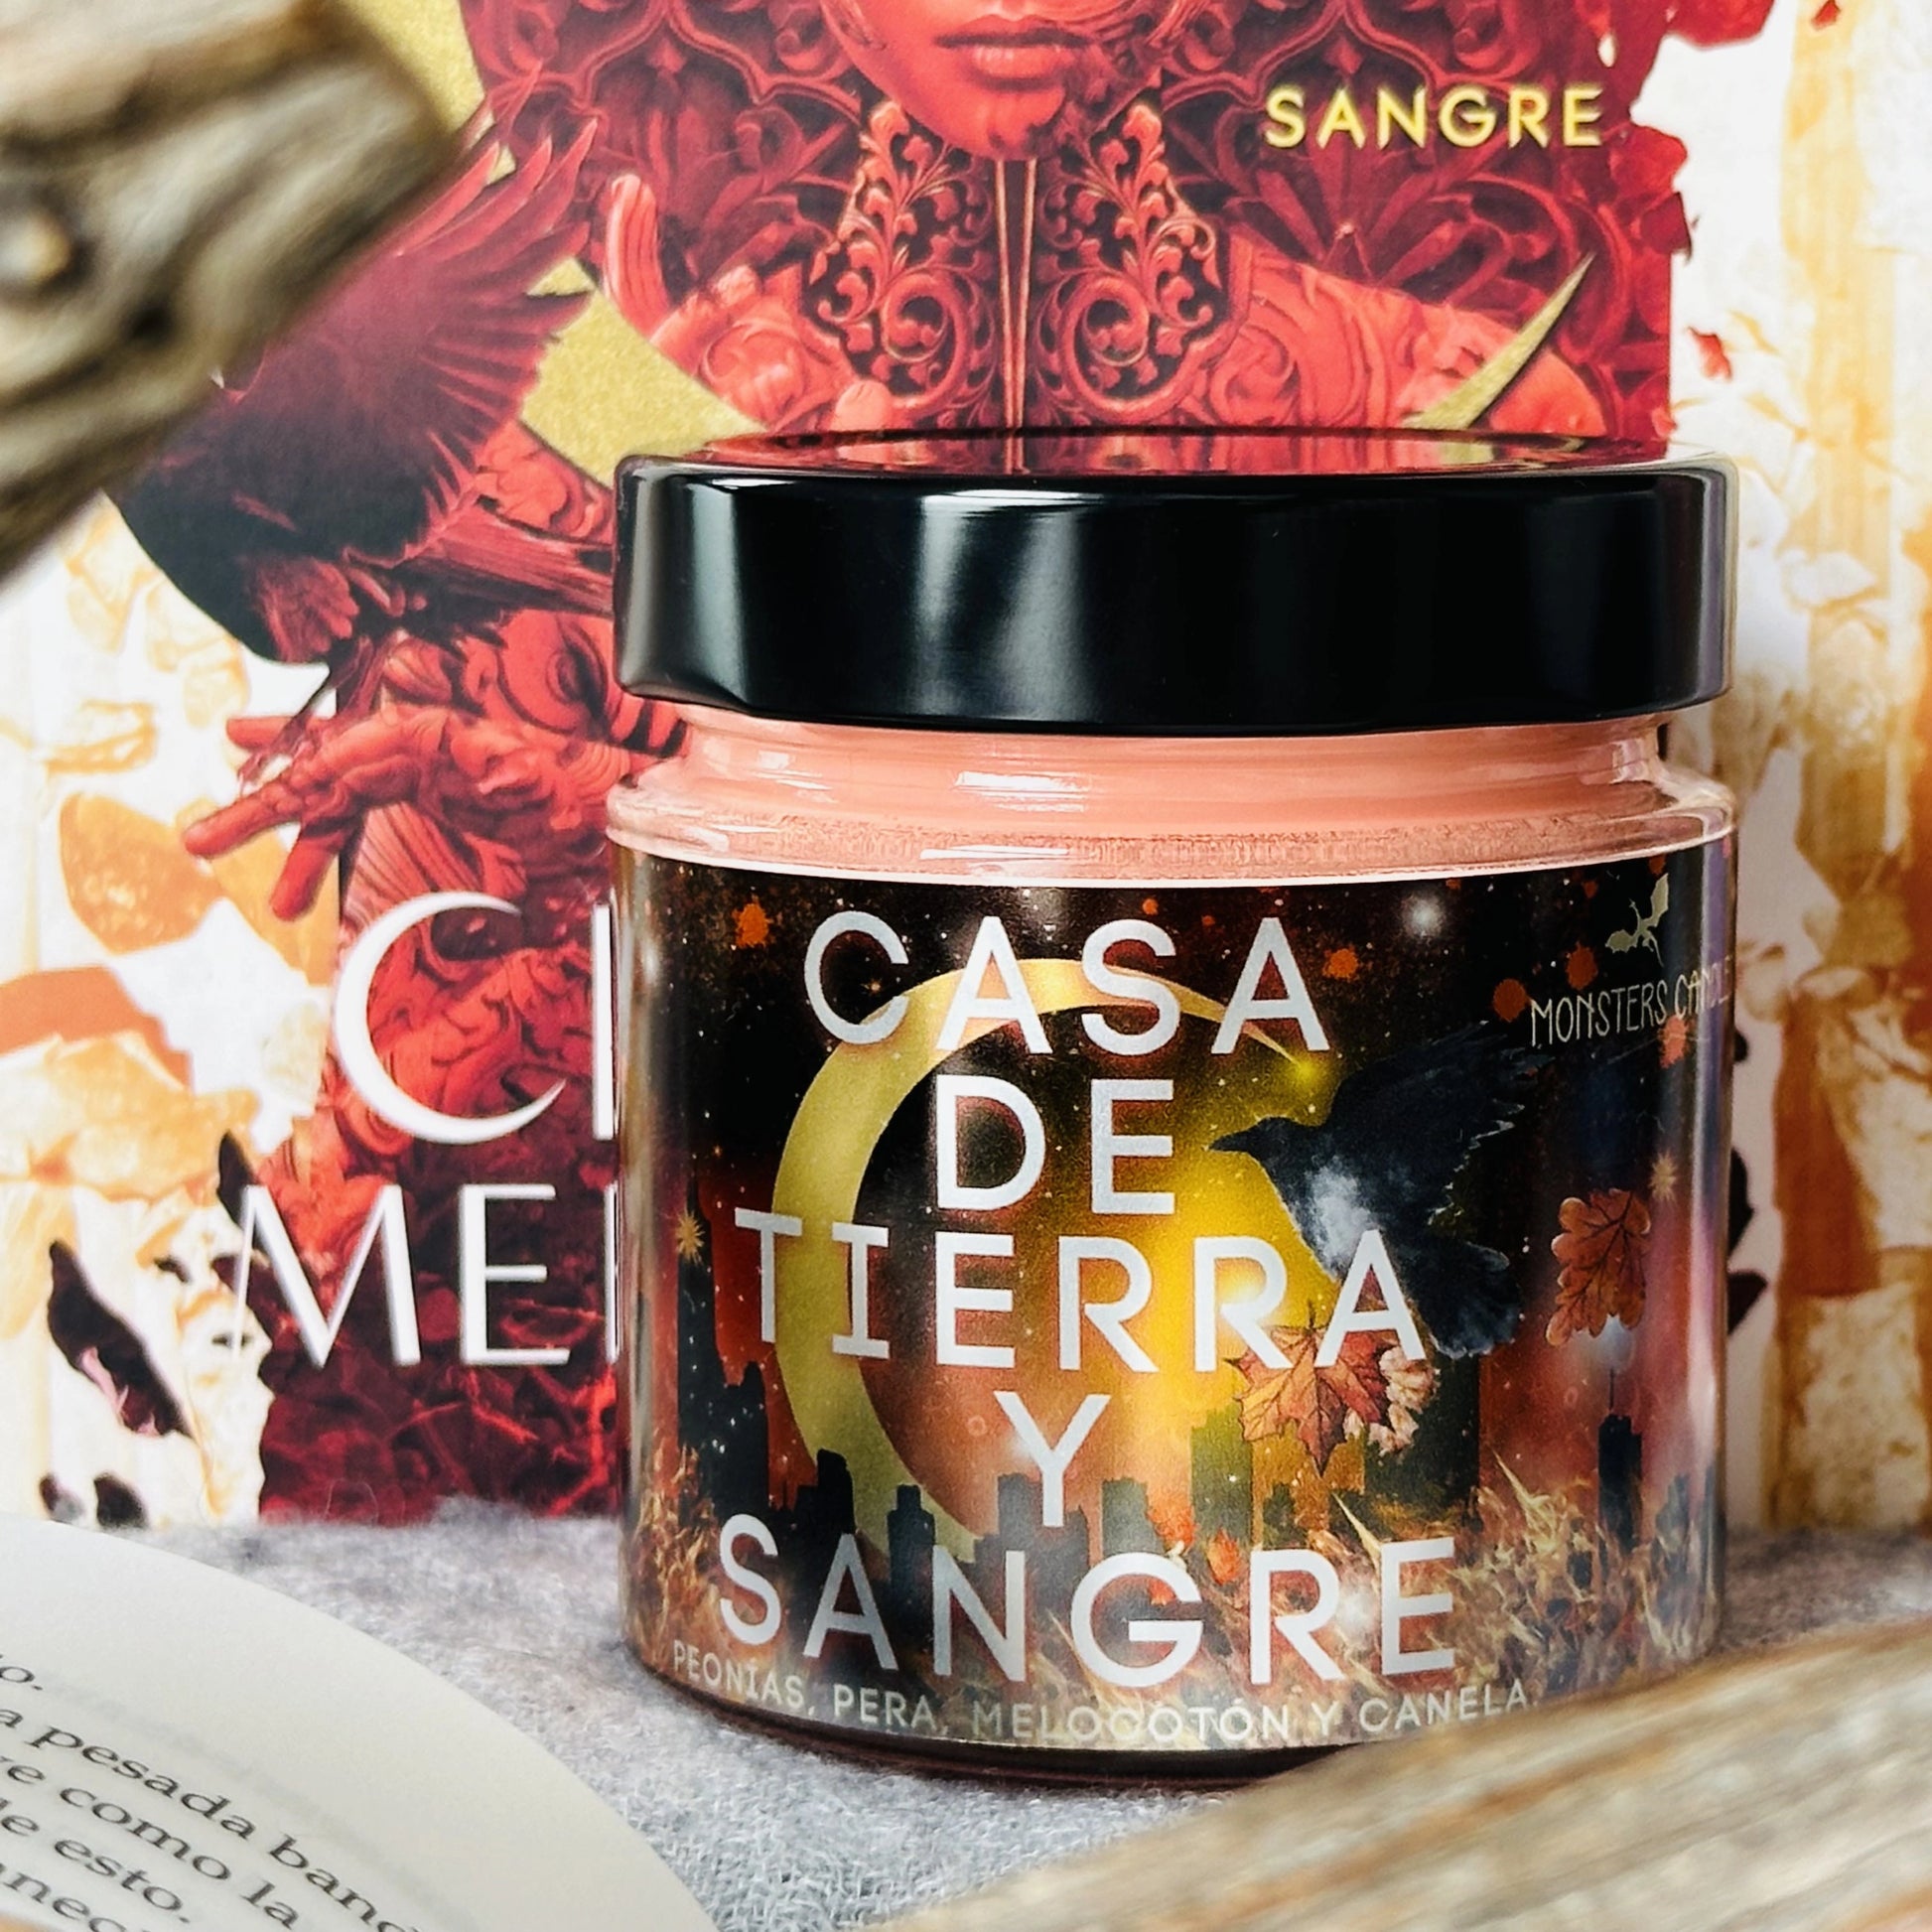 Vela "Casa de Tierra y Sangre” Edición Exclusiva - Monsters Candles ® - Velas Literarias artesanas de soja 100% ecológica